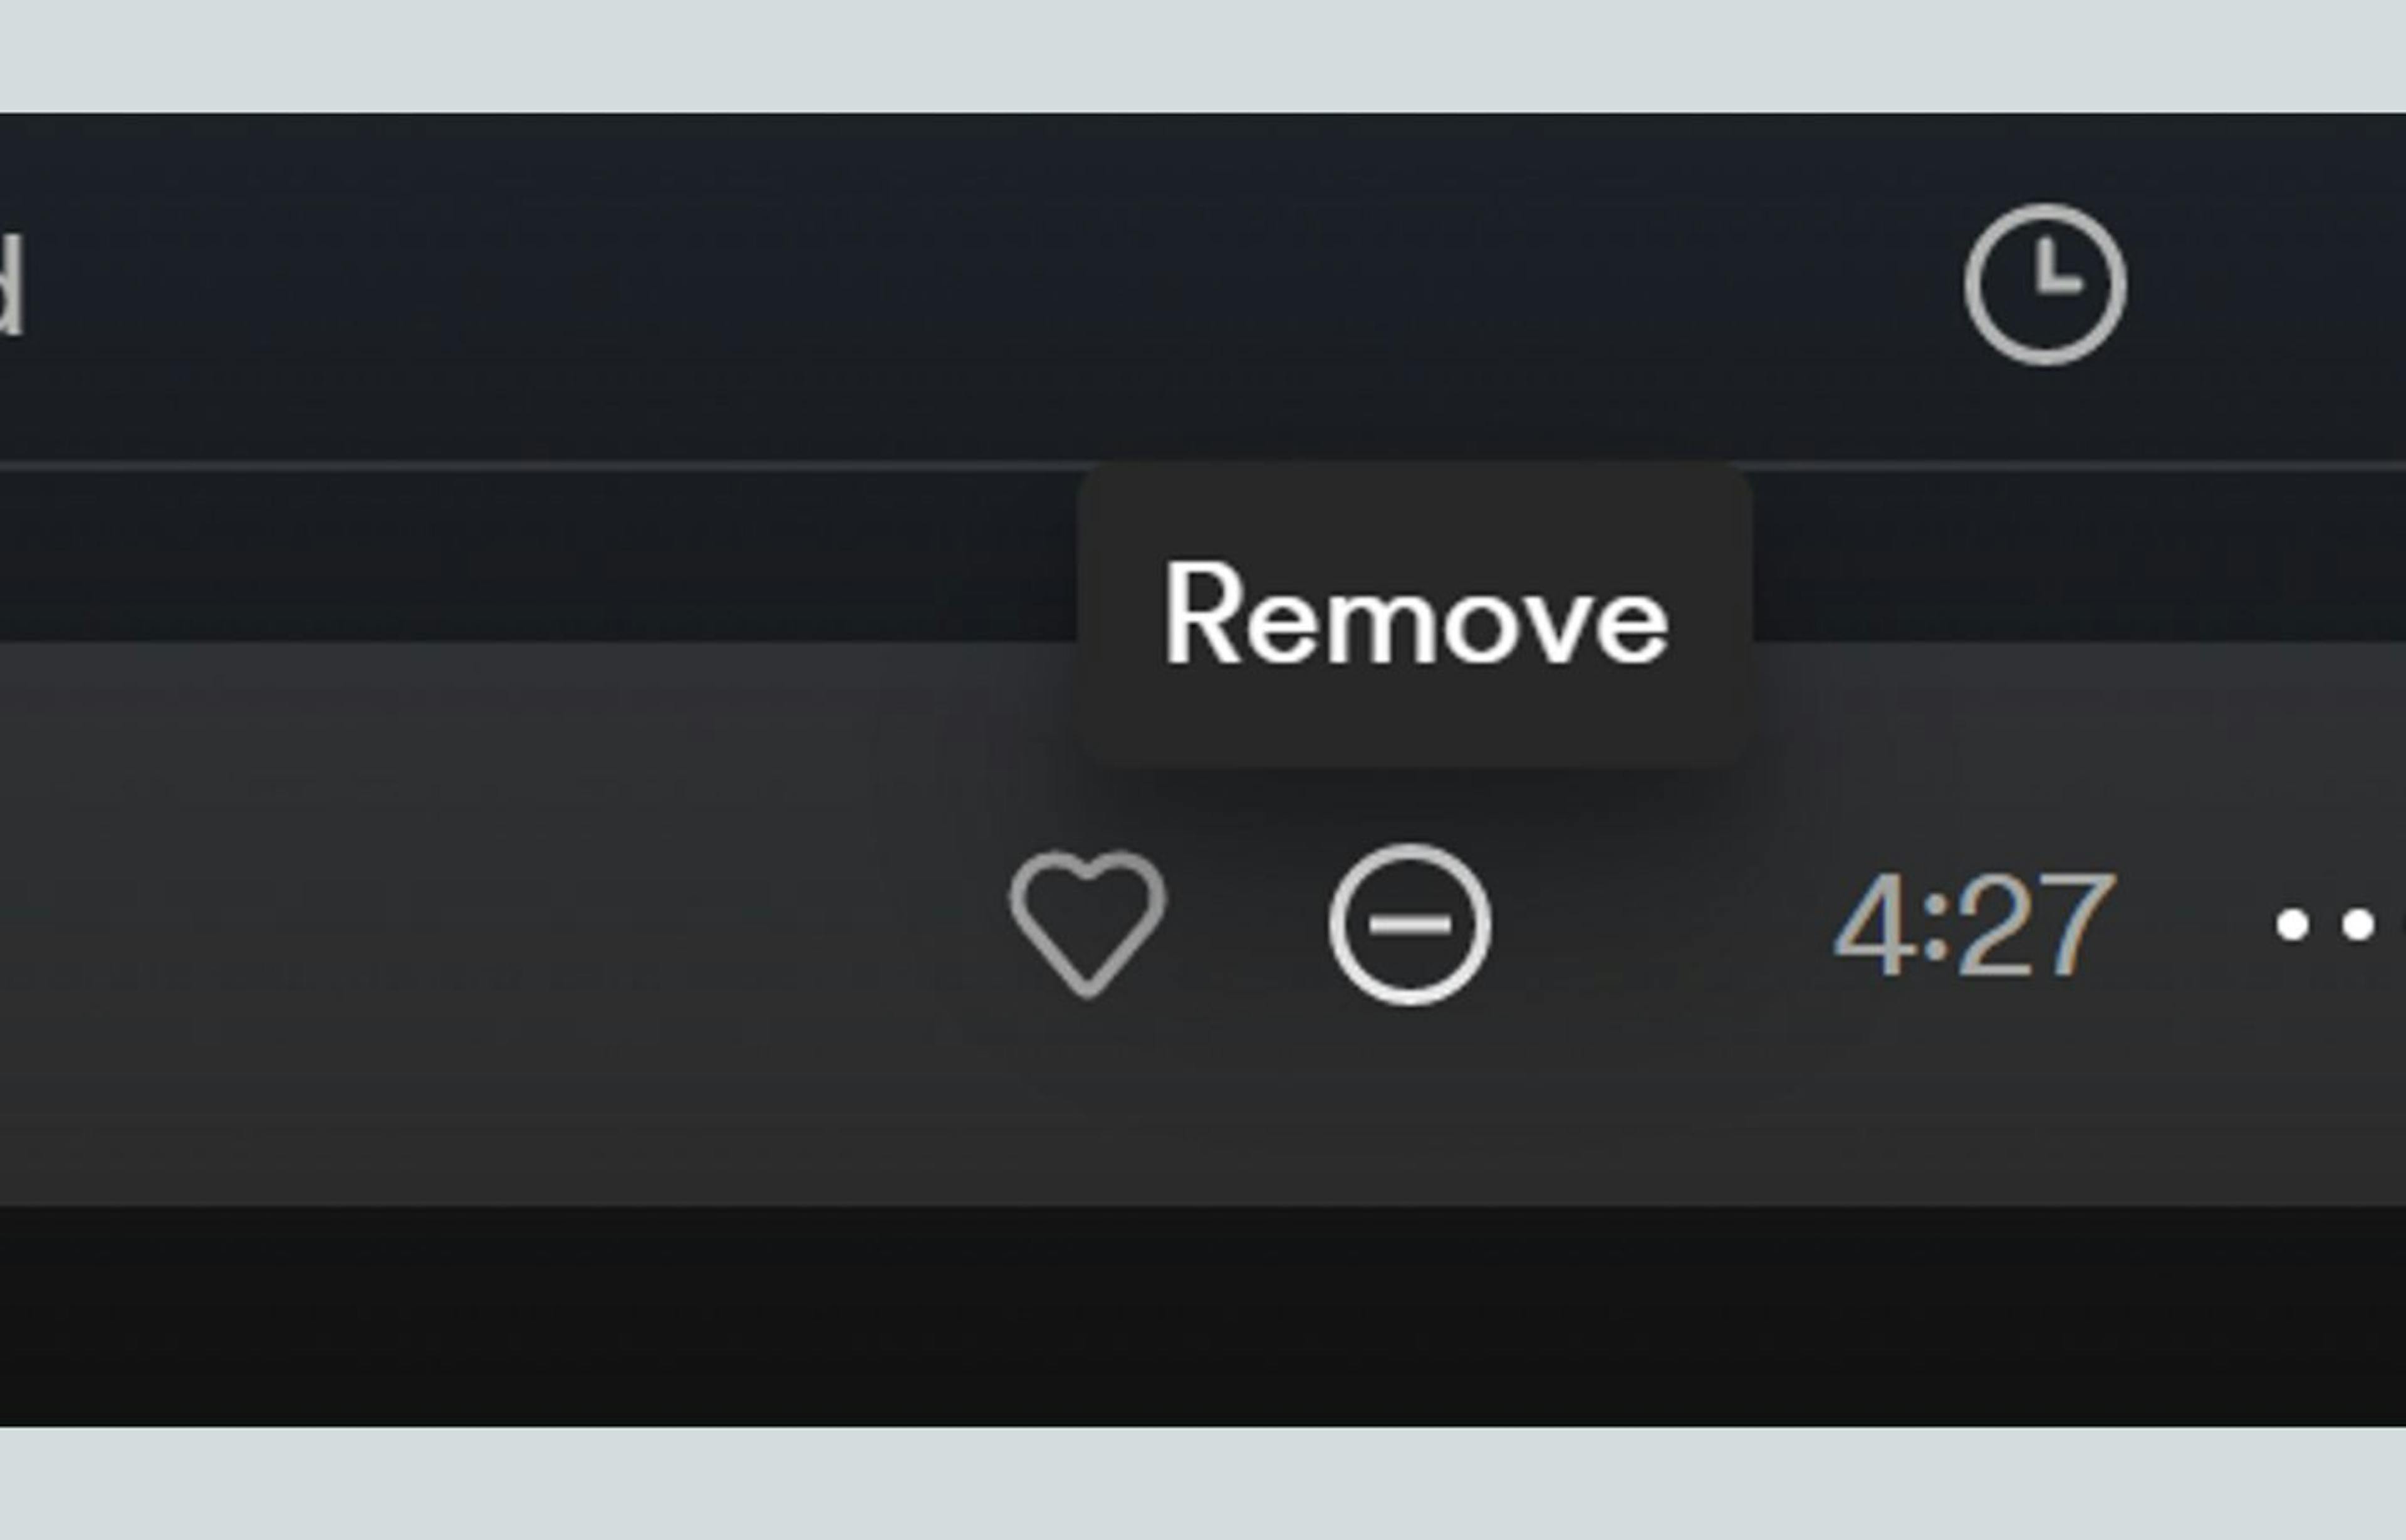 Spotify 的删除按钮允许用户澄清建议，通知系统他们希望减少看到类似的歌曲